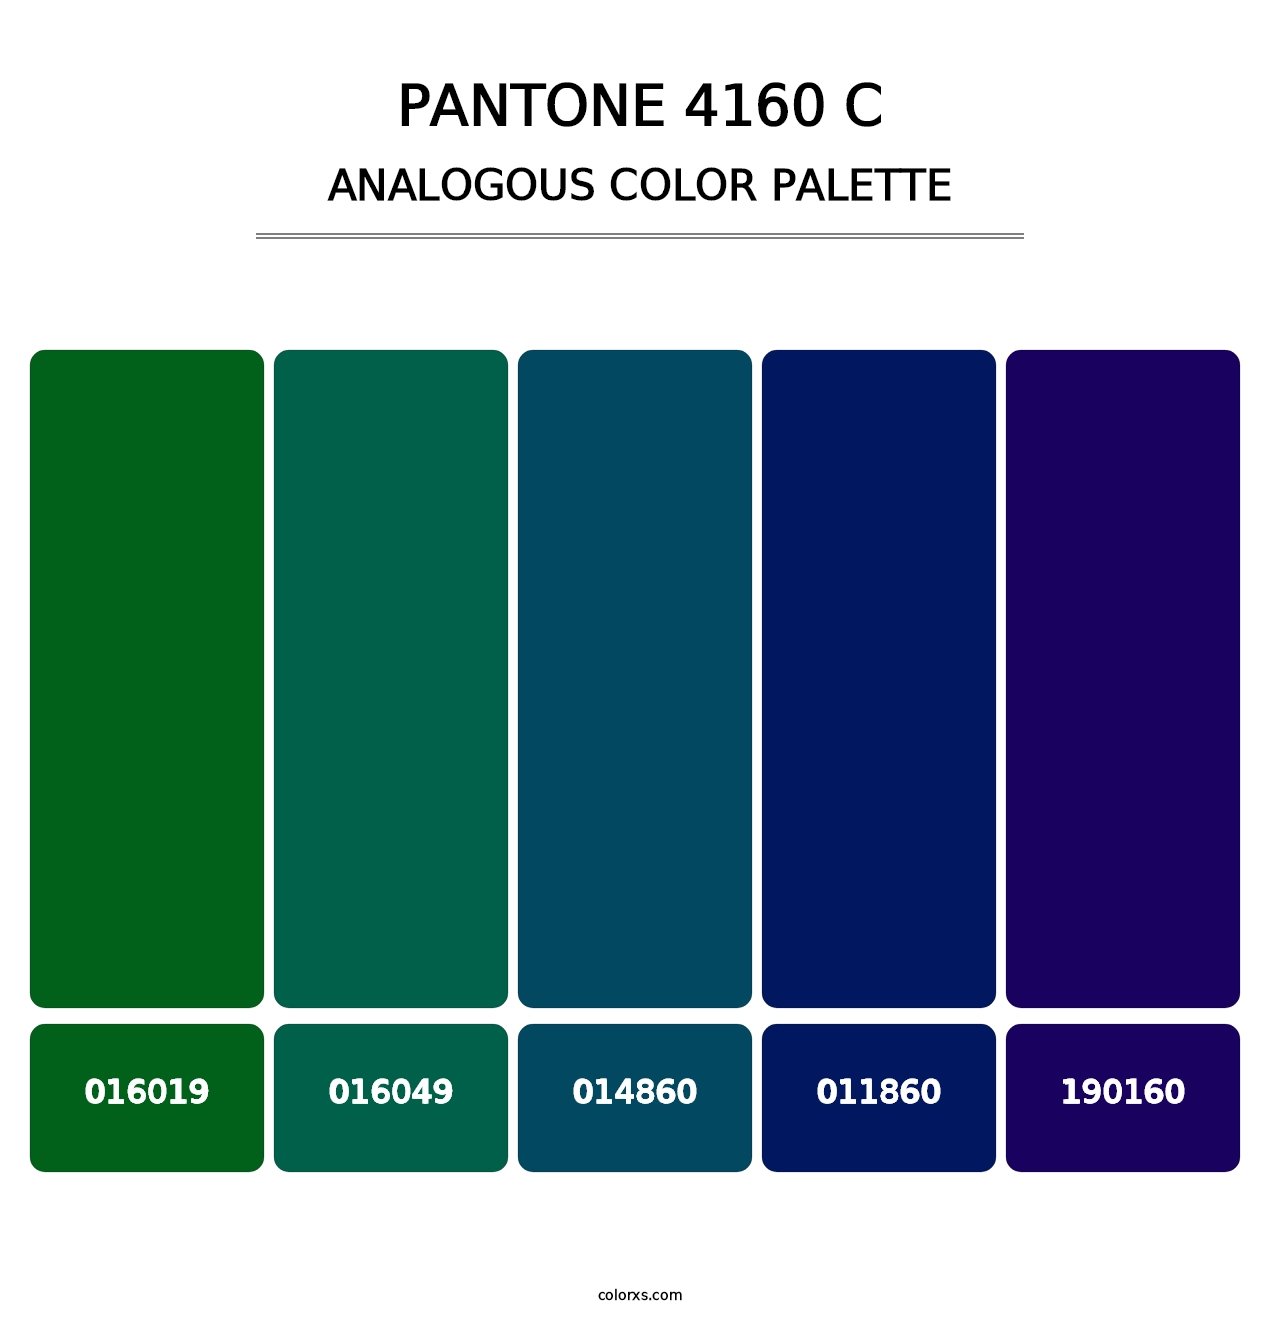 PANTONE 4160 C - Analogous Color Palette